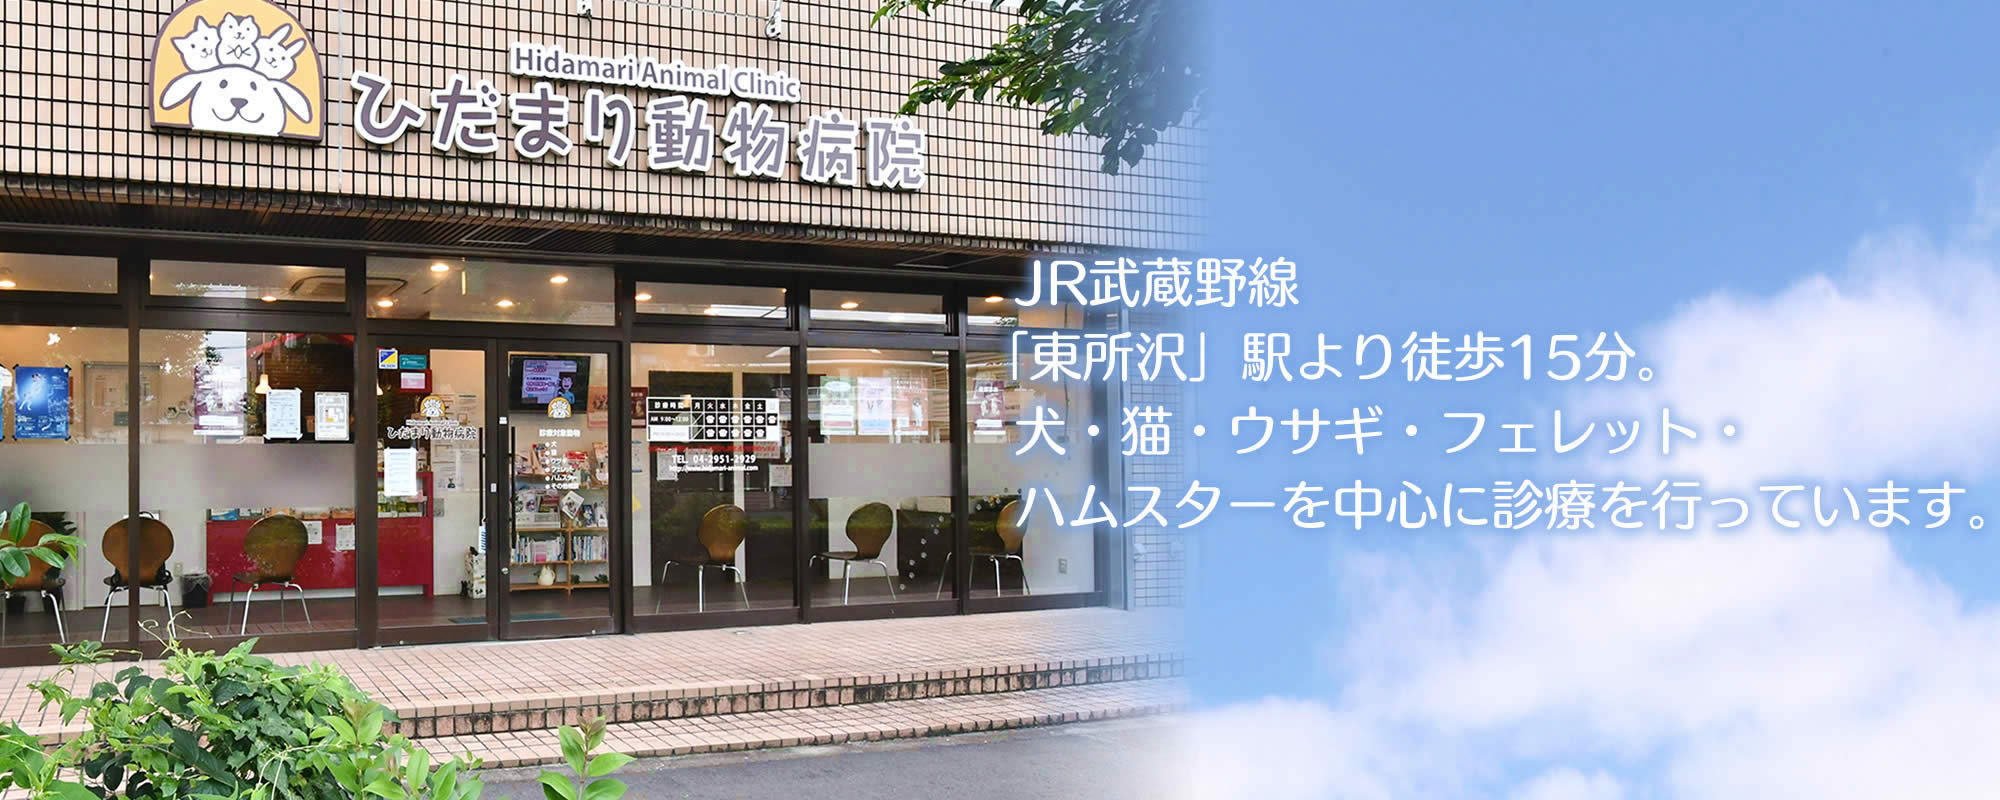 ひだまり動物病院。「東所沢」駅より徒歩15分。犬・猫・ウサギ・フェレット・ハムスターを中心に診療